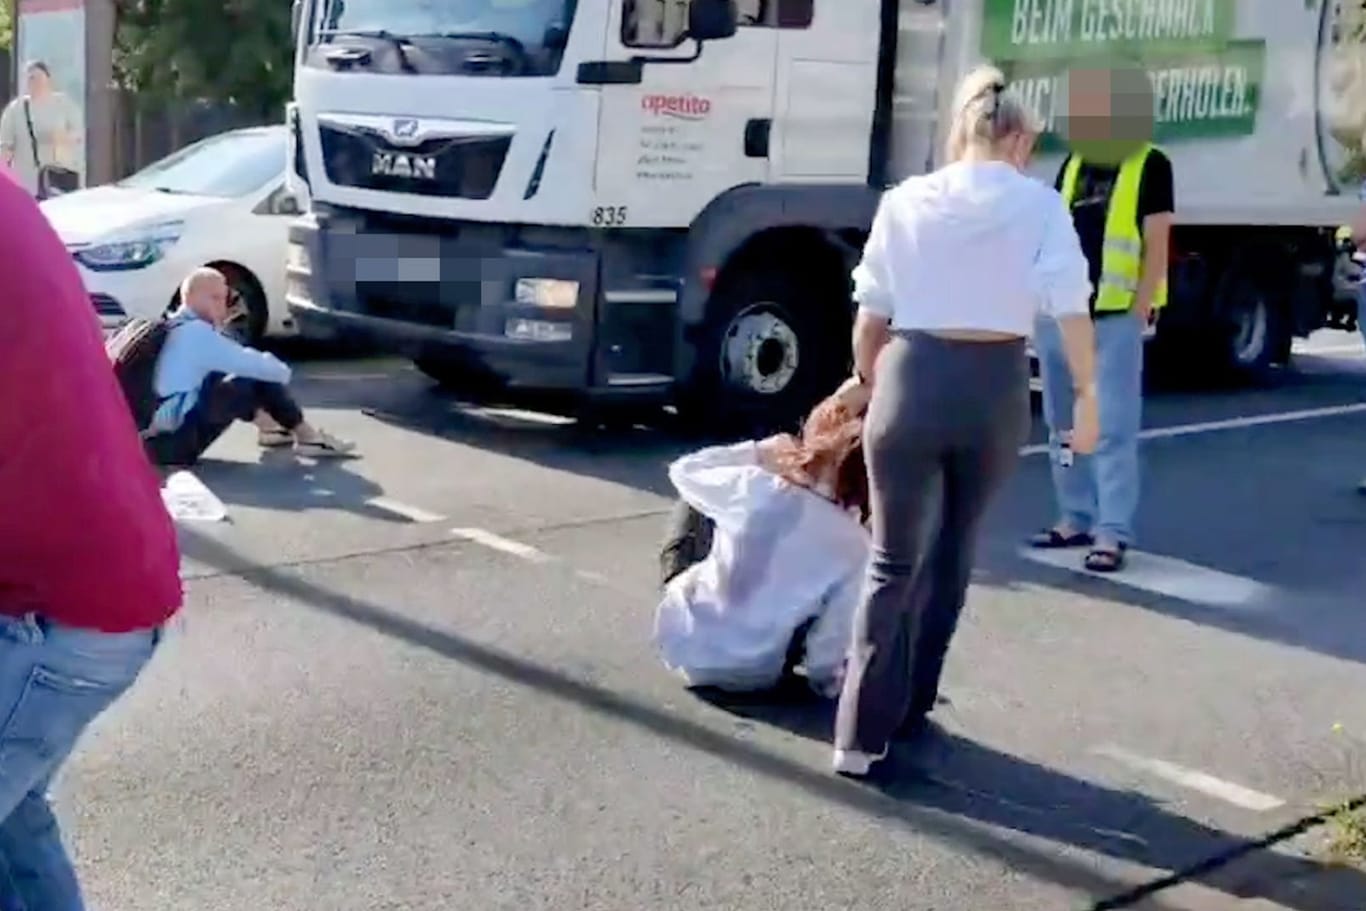 Frau schleift Aktivistin von der Straße